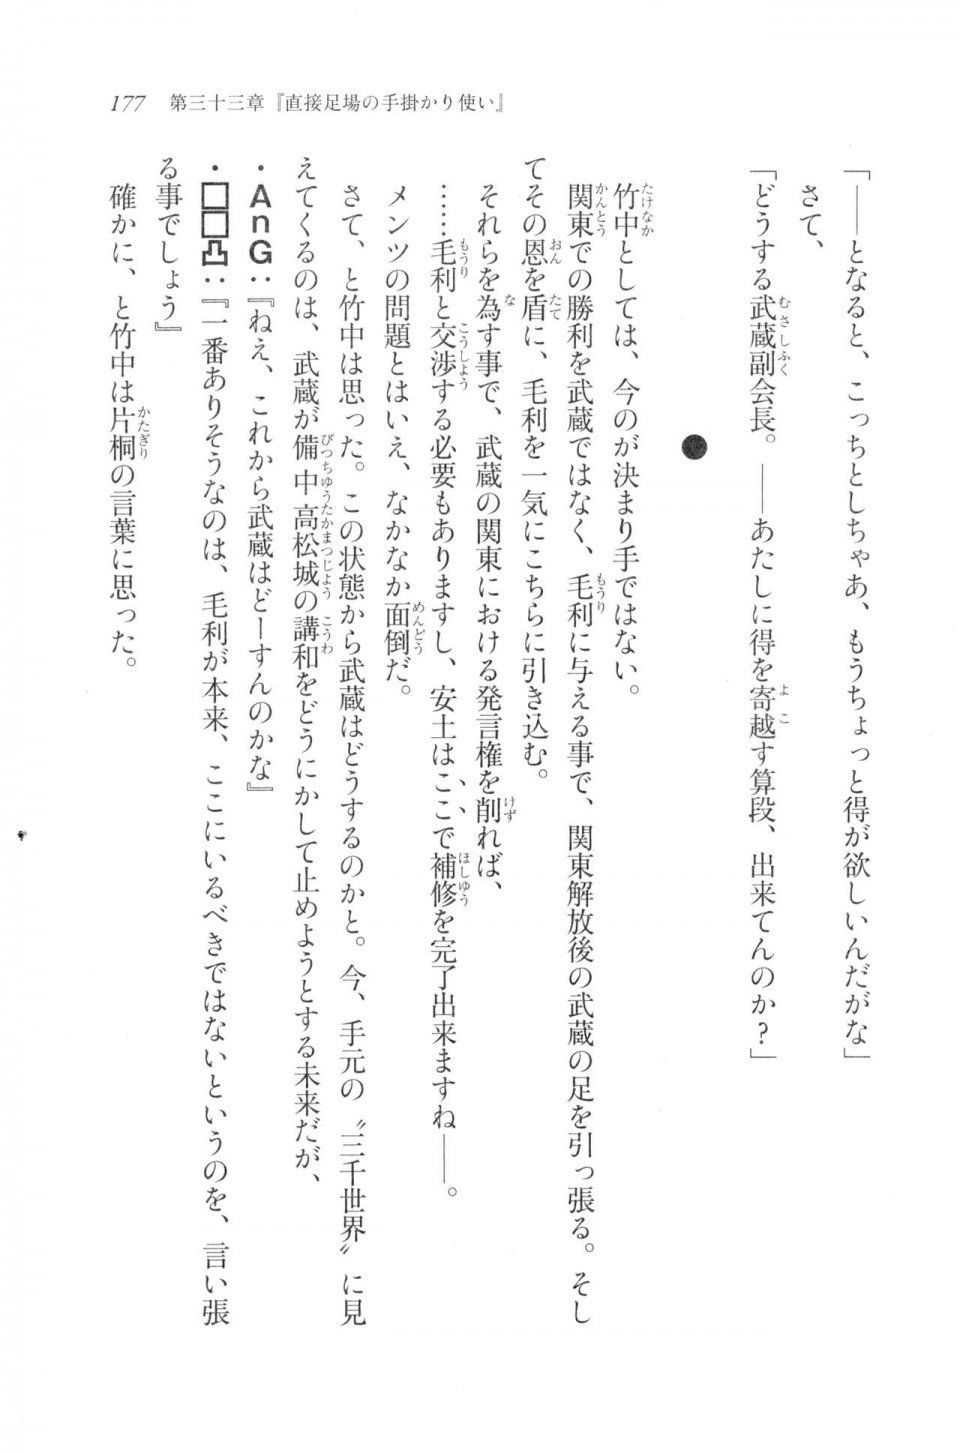 Kyoukai Senjou no Horizon LN Vol 20(8B) - Photo #177